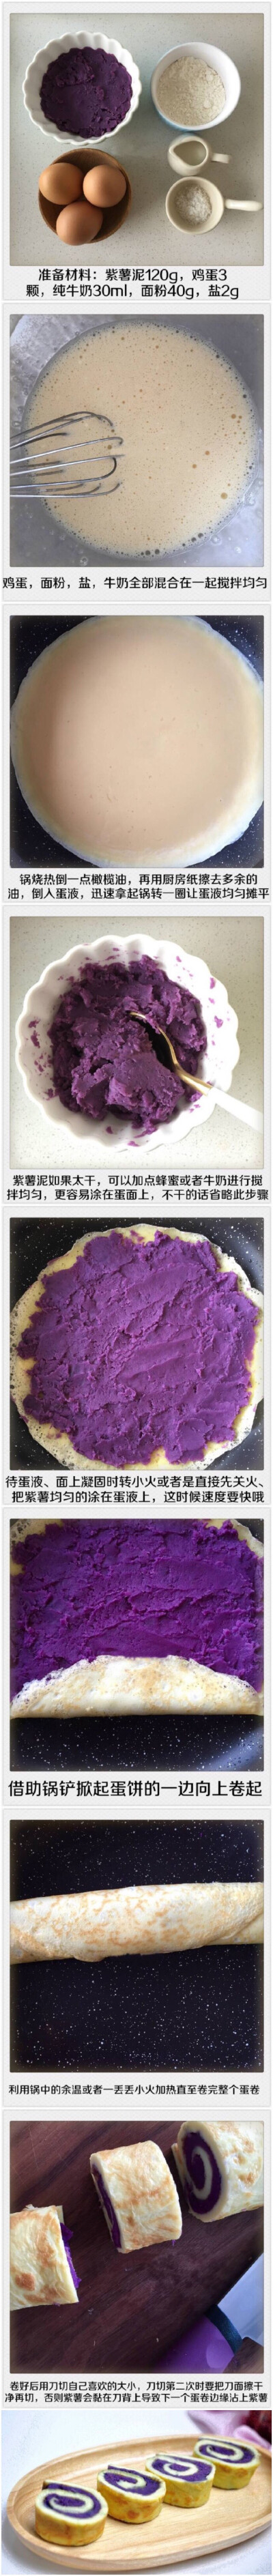 【紫薯蛋卷】紫薯富含纤维素，促进胃肠蠕动，抗衰老![赞][赞]早餐吃这个棒棒哒~